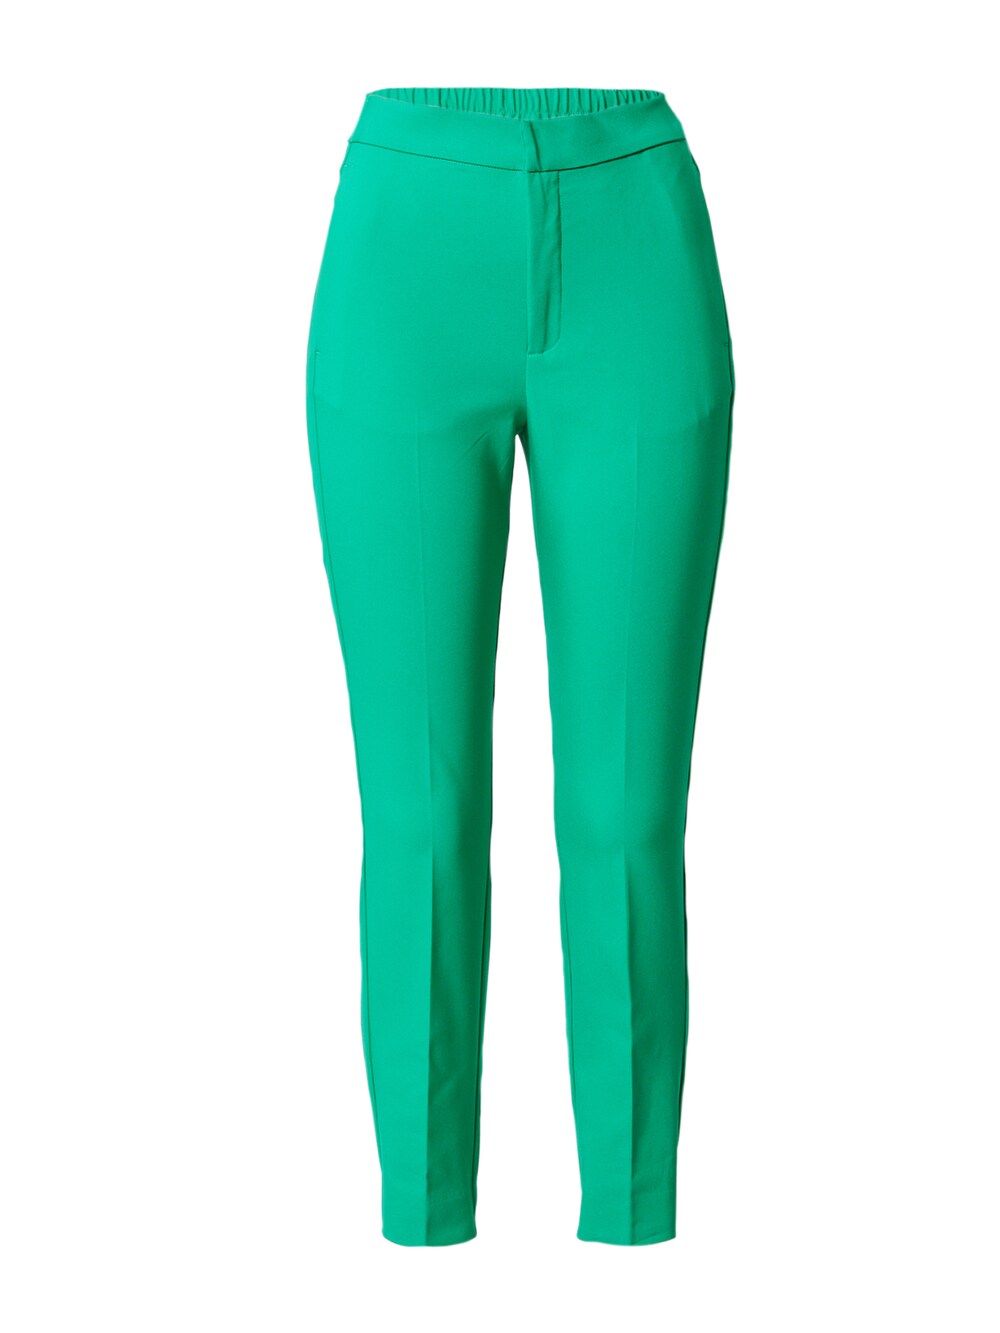 Обычные плиссированные брюки Inwear Zella, зеленый